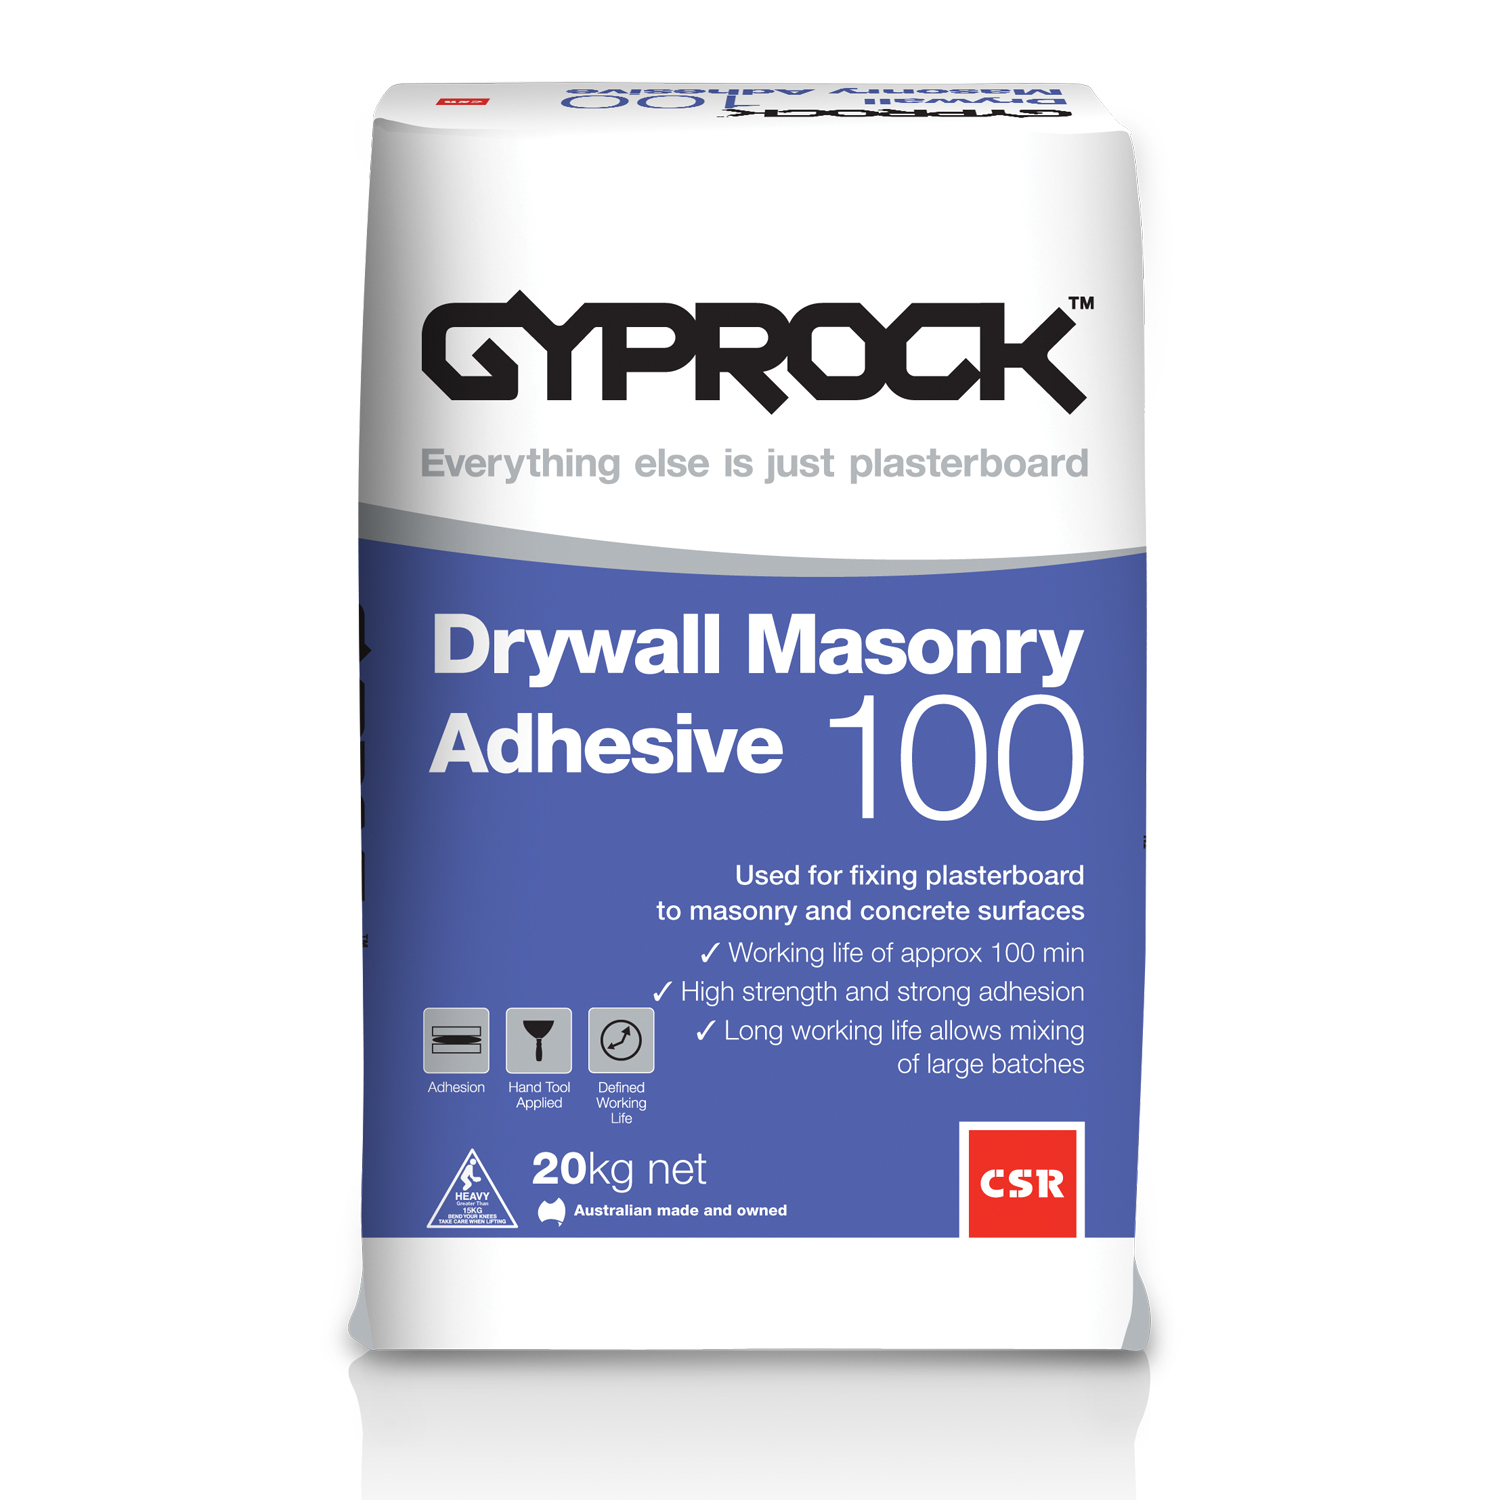 Gyprock® Drywall Masonry Adhesive 100